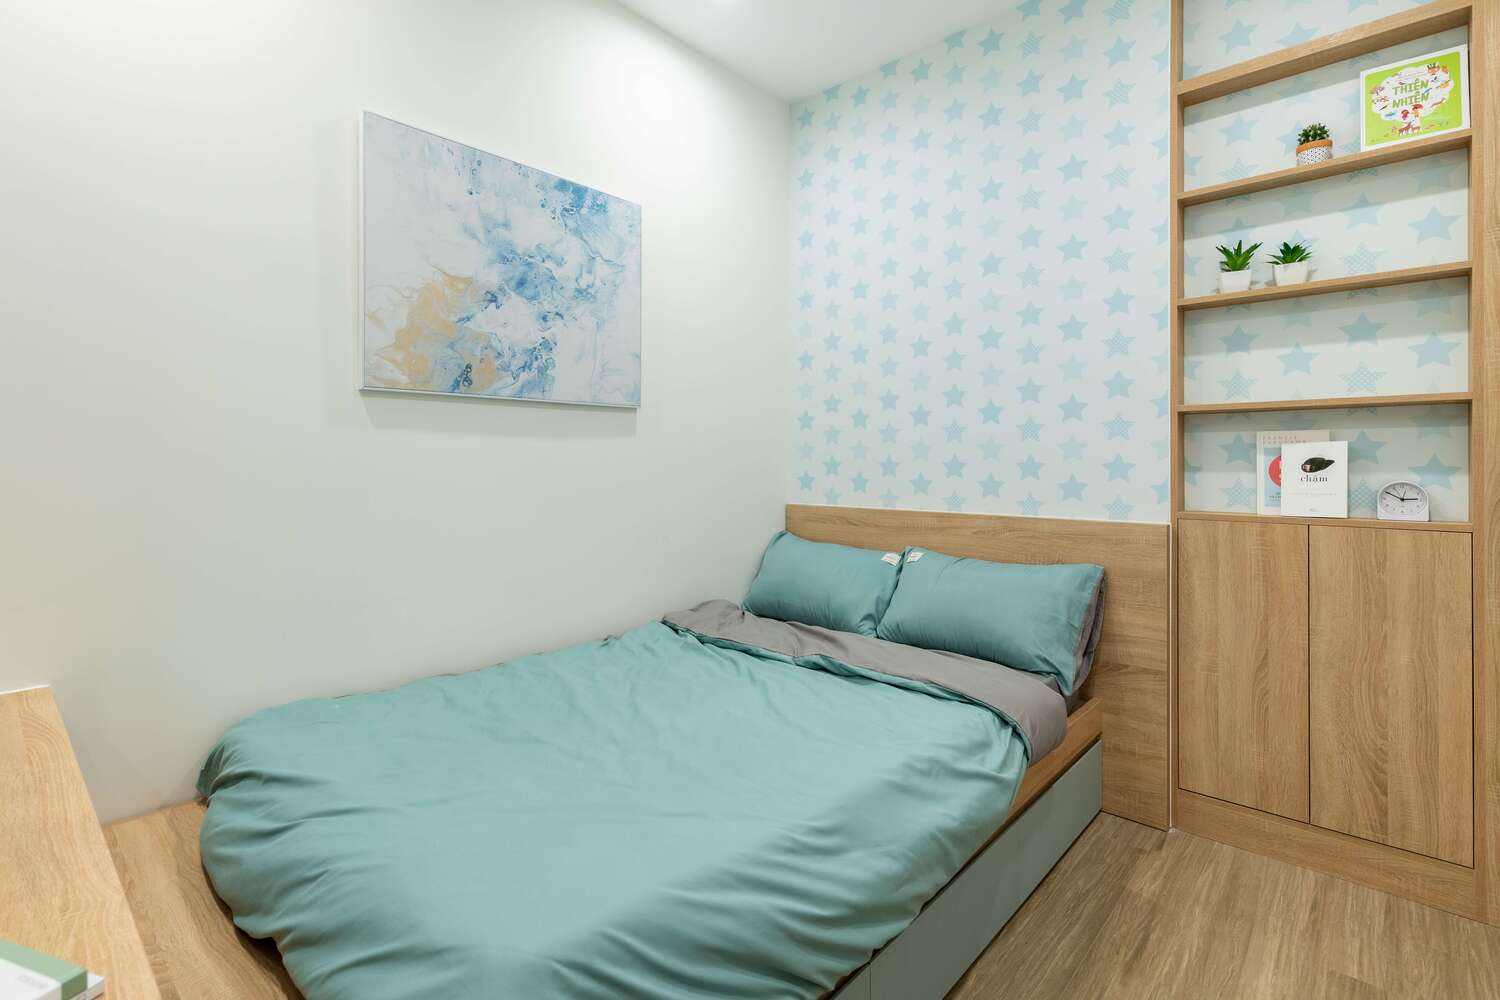 12 Phòng ngủ nhỏ với thiết kế đơn giản